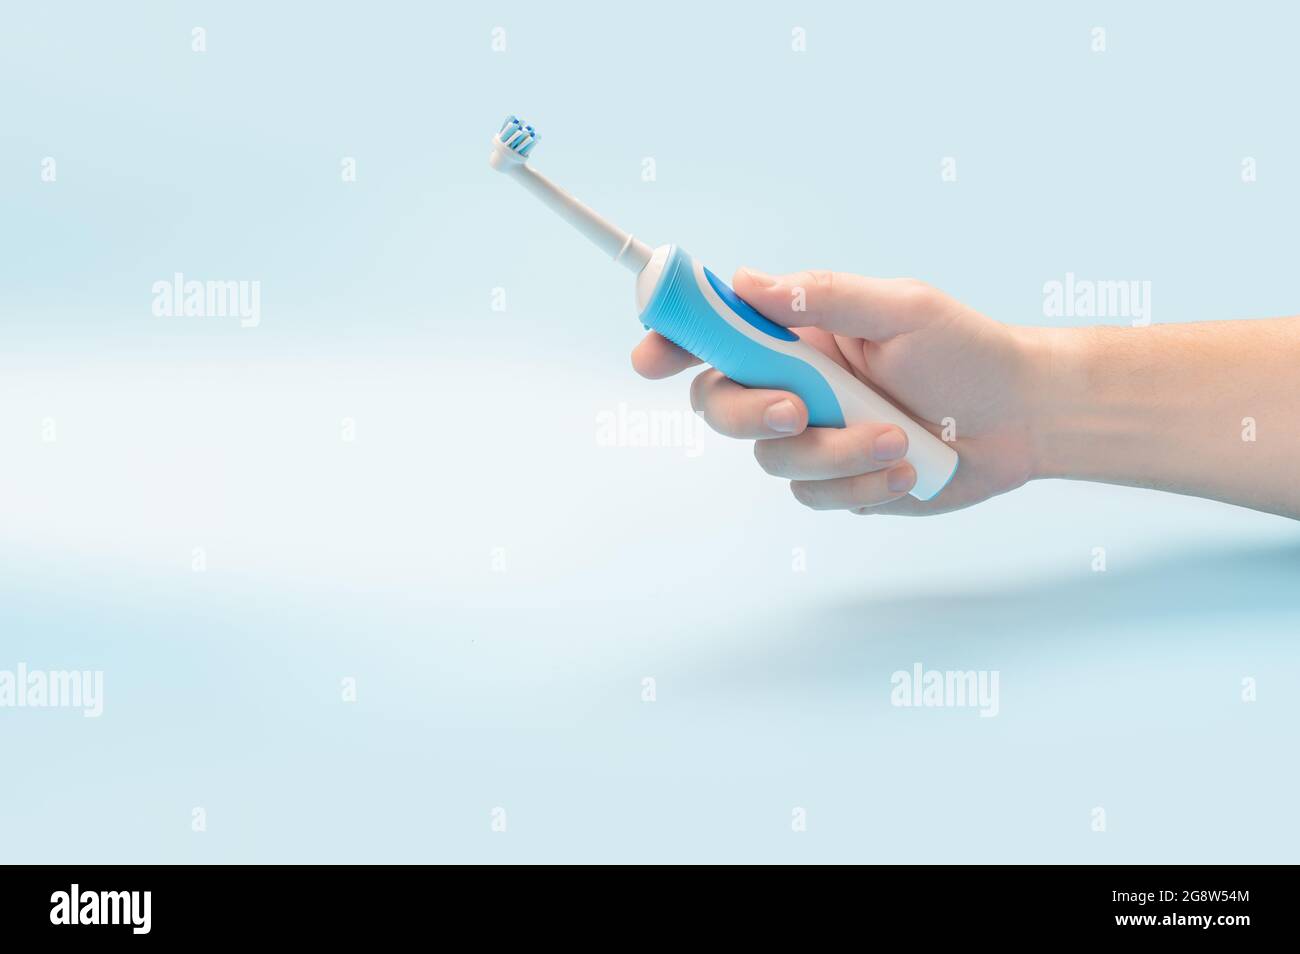 Elektrische Zahnbürste in der Menschenhand. Mann hält elektrische Zahnbürste vor blauem Hintergrund. Moderne Technologie für die Gesundheit. Gesunde Zähne. Zahnmedizin ca. Stockfoto